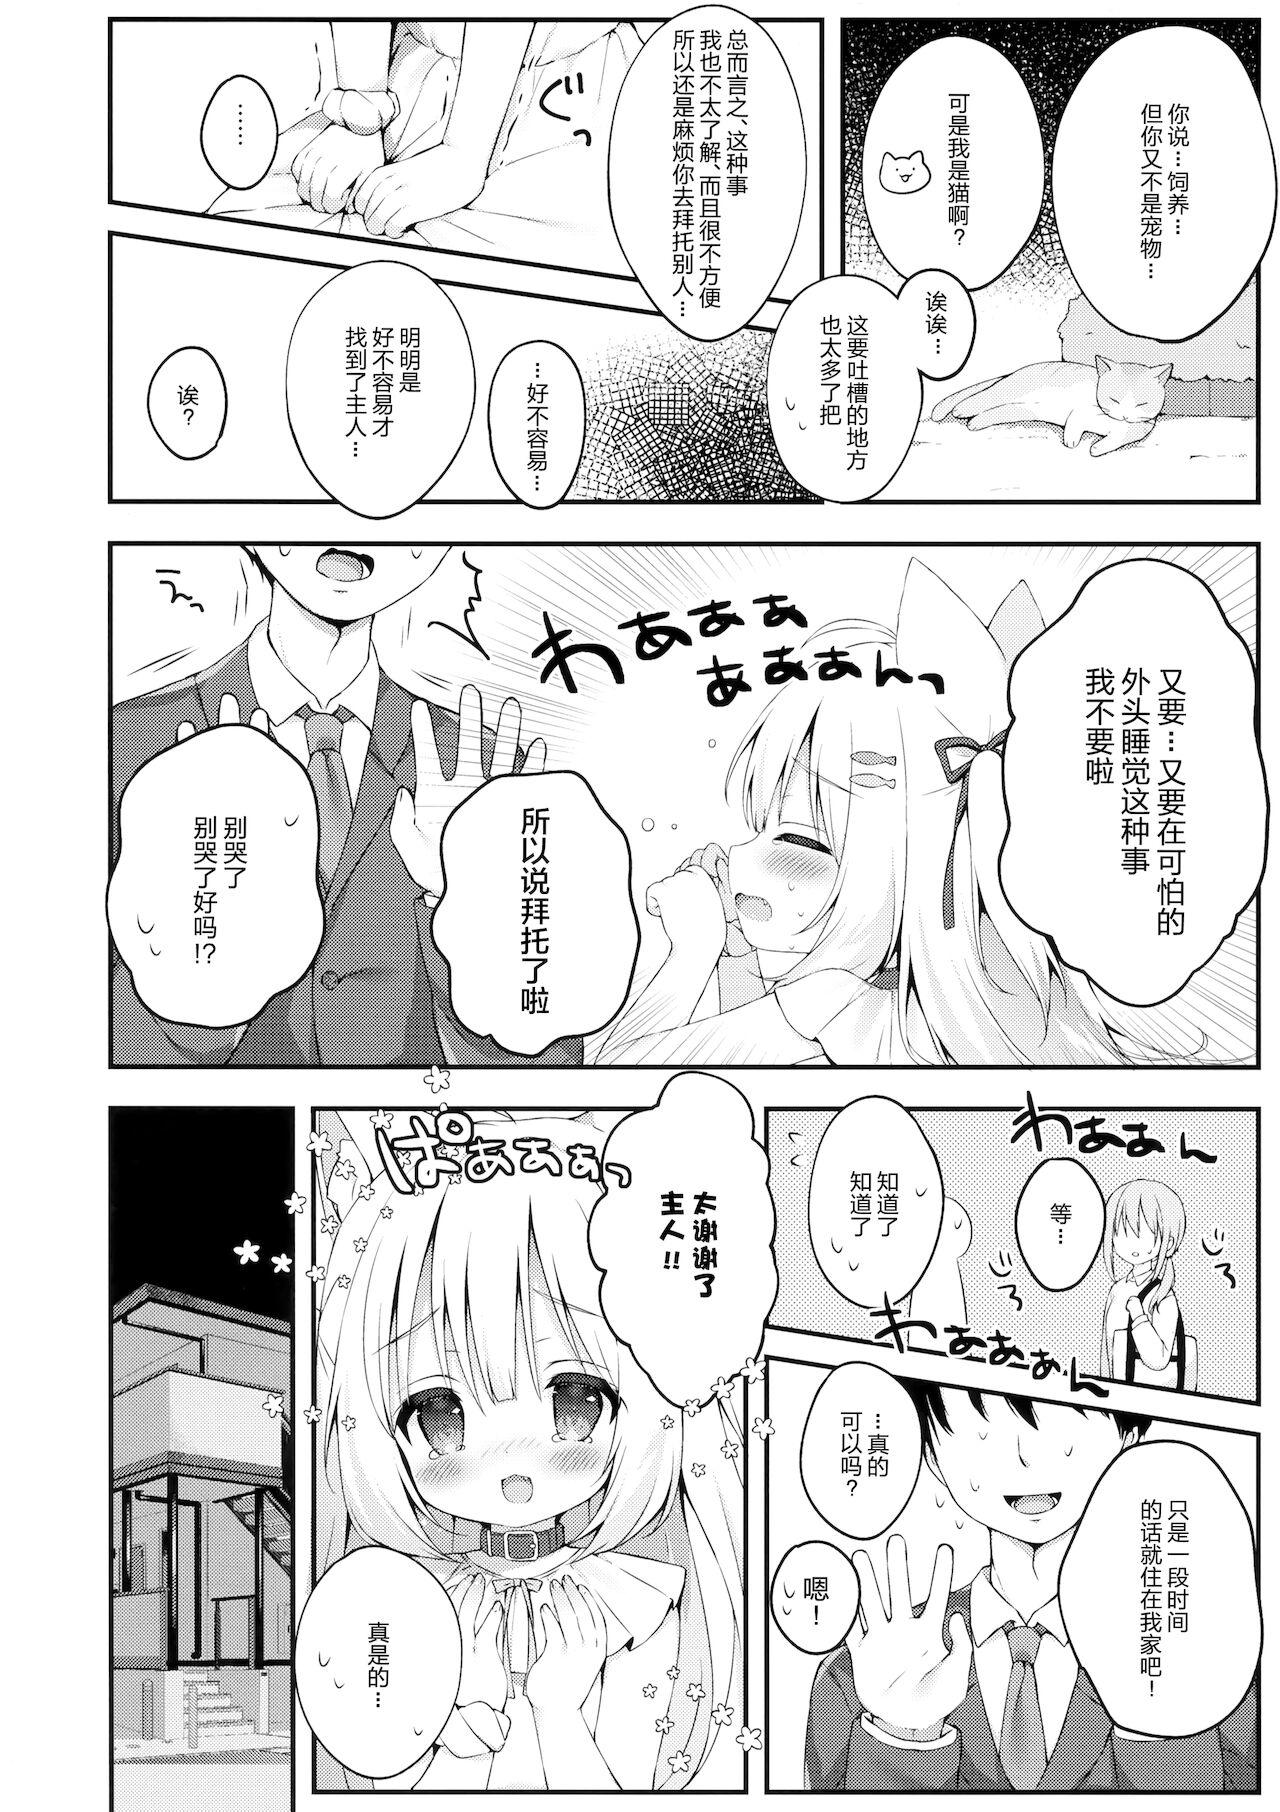 Virginity Katte kudasai, goshujin-sama! - Original Blowing - Page 8